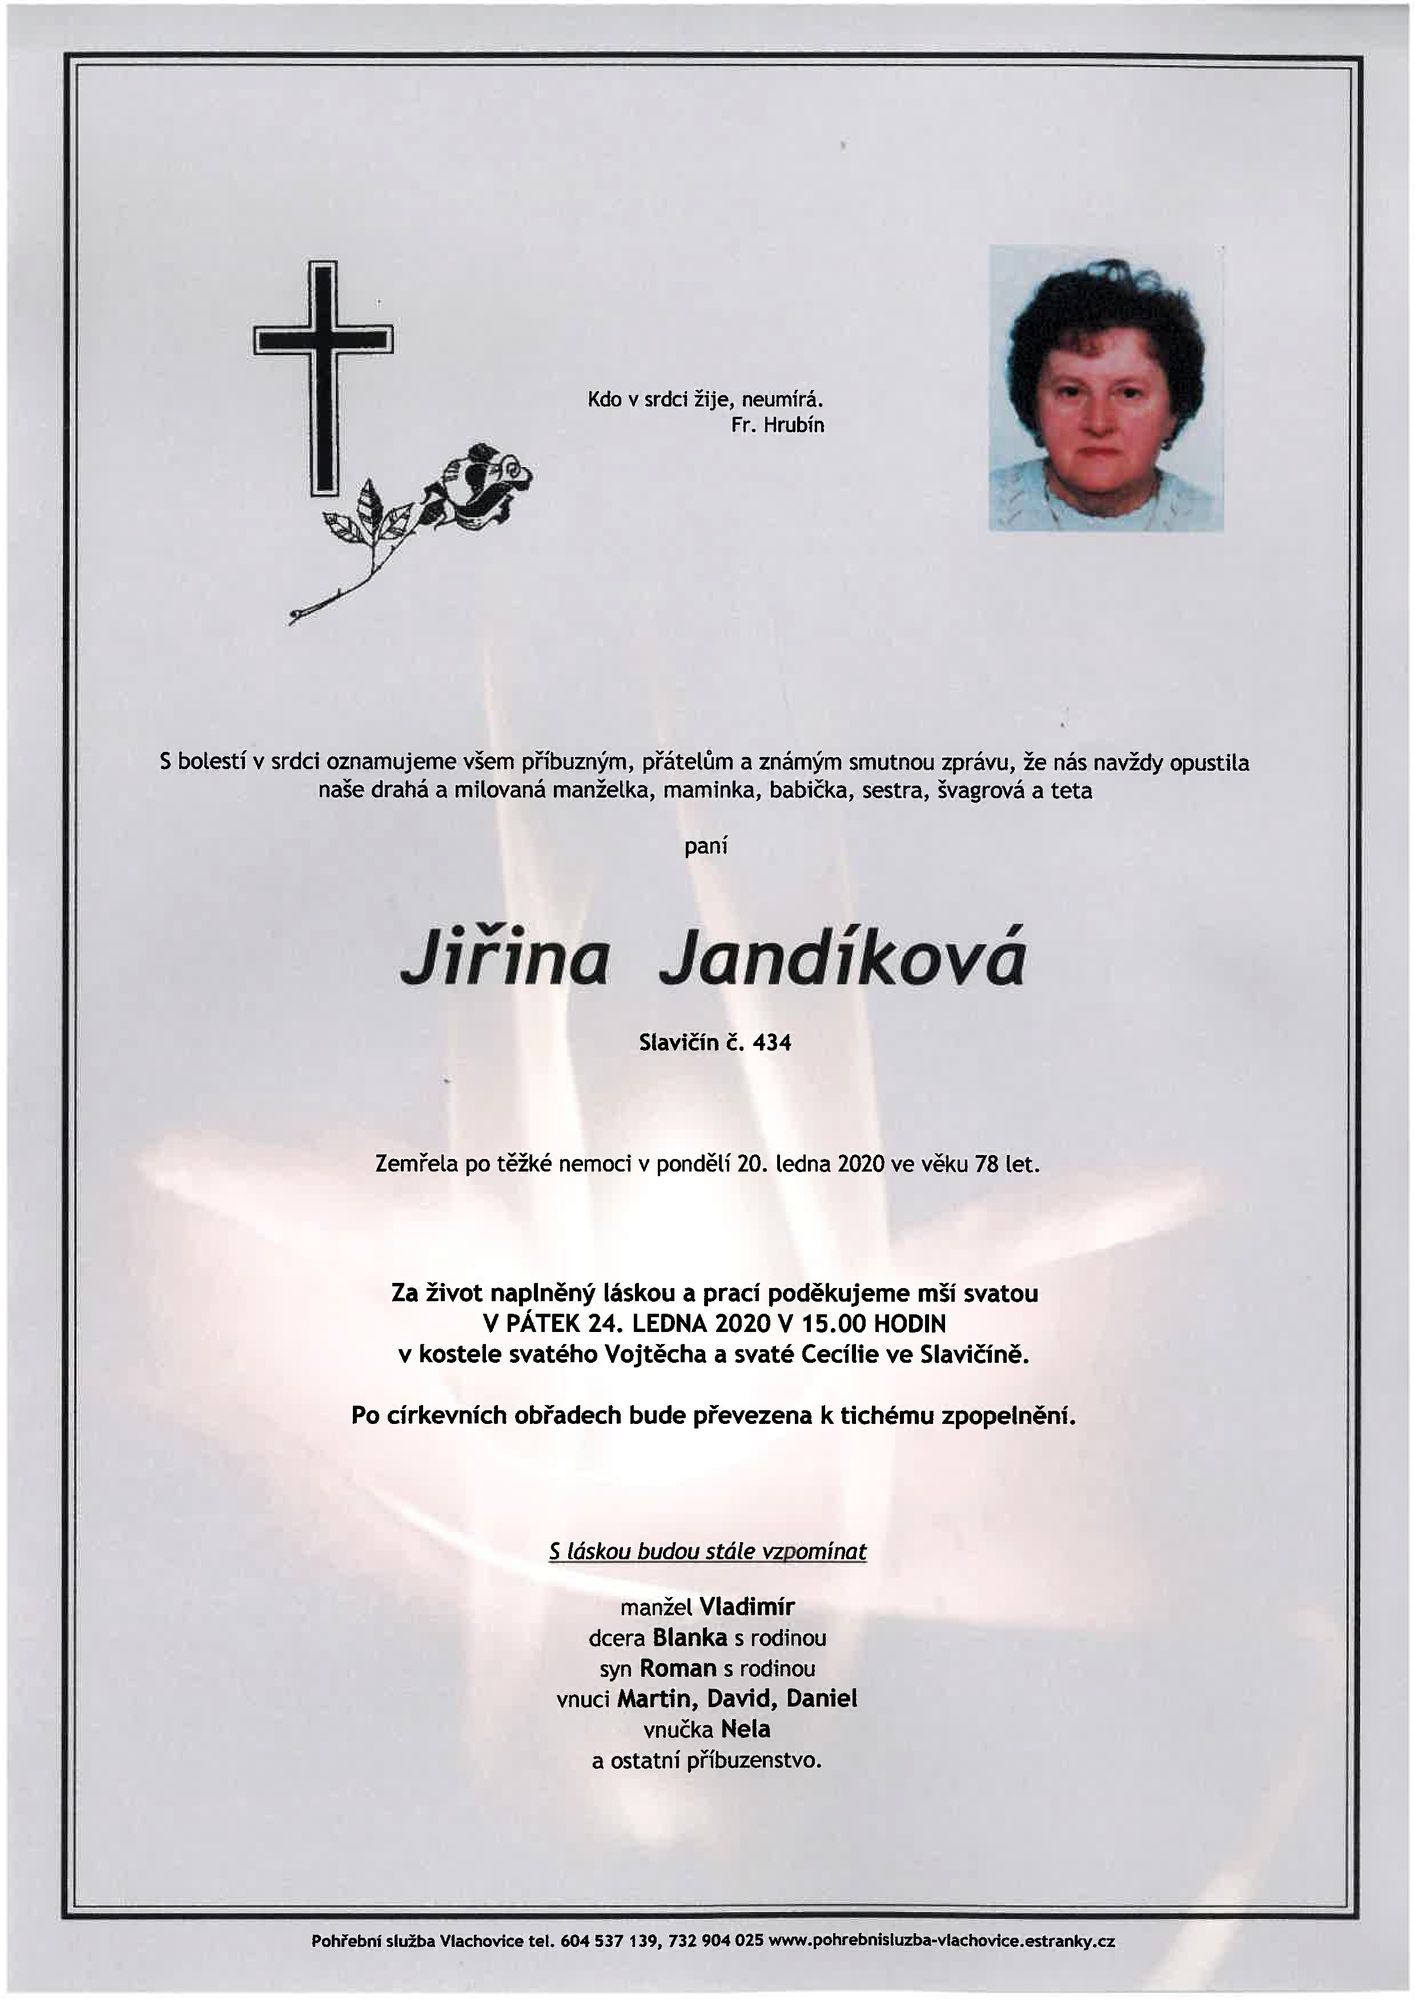 Jiřina Jandíková